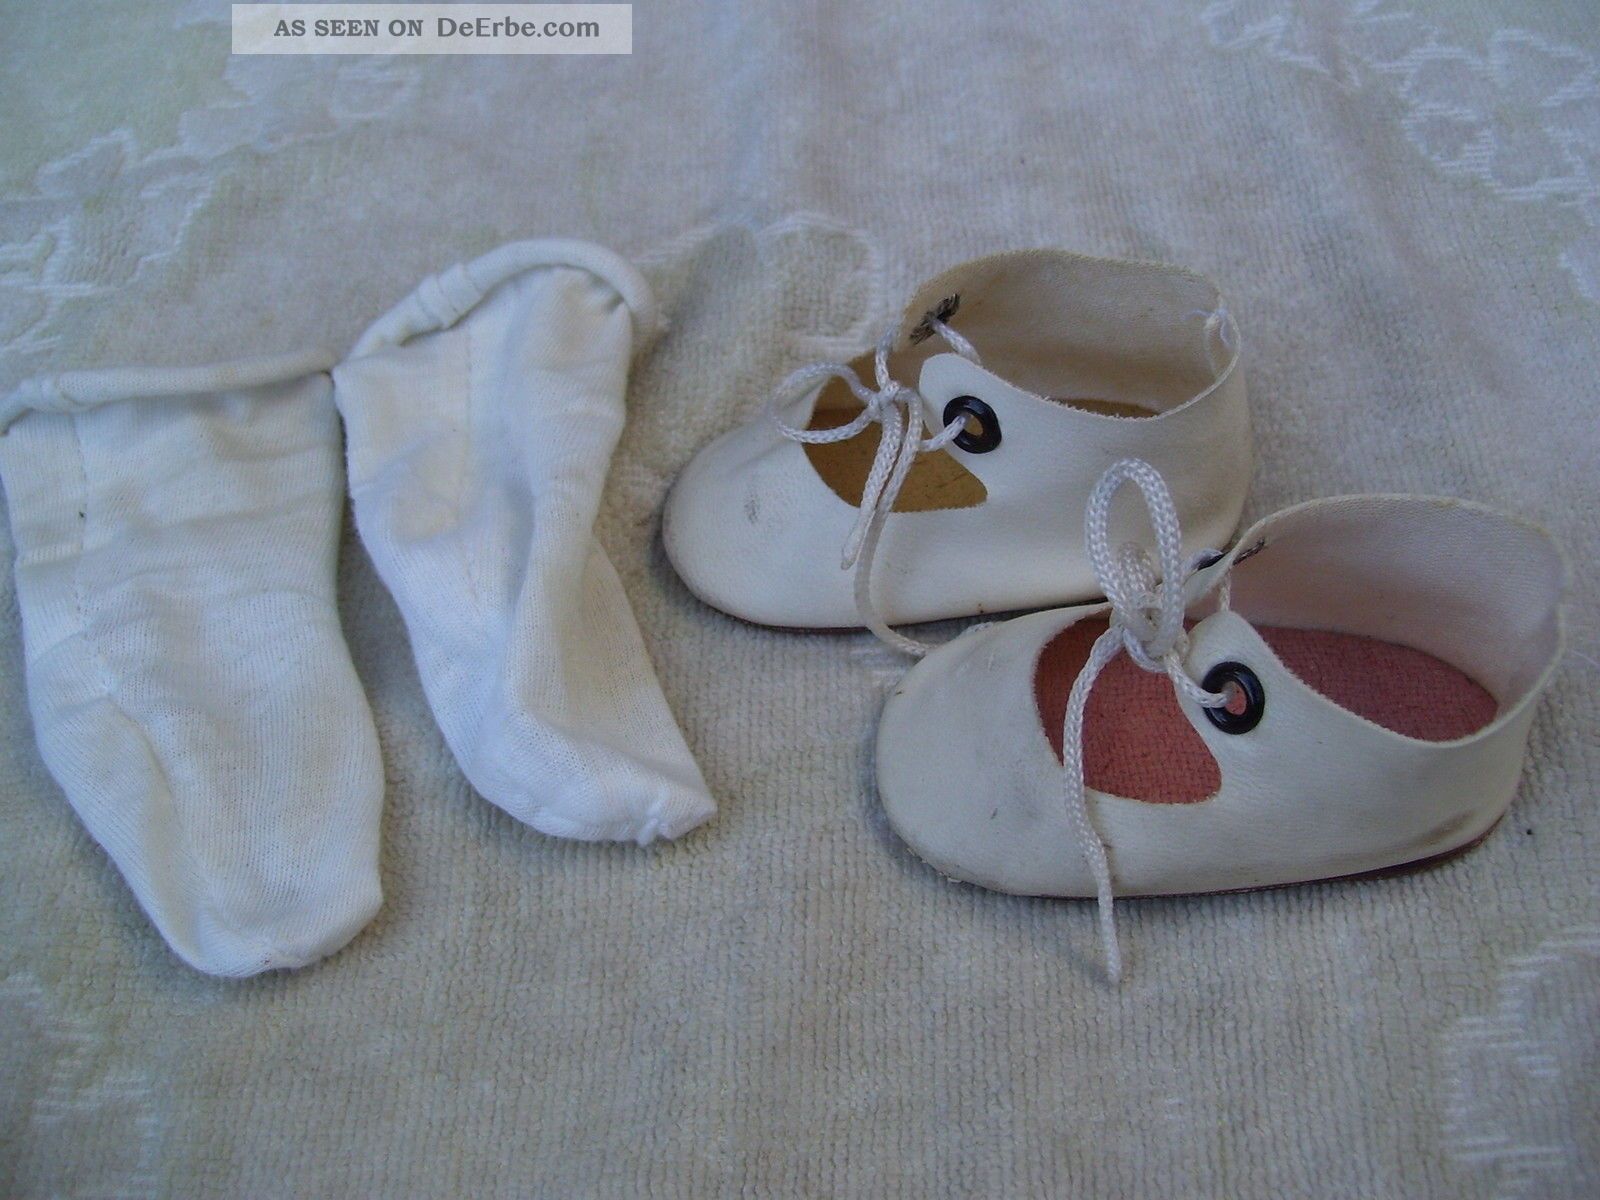 Alte Puppenkleidung Schuhe Vintage White Shoes White Socks 67 Cm Doll 8 Cm Original, gefertigt vor 1970 Bild